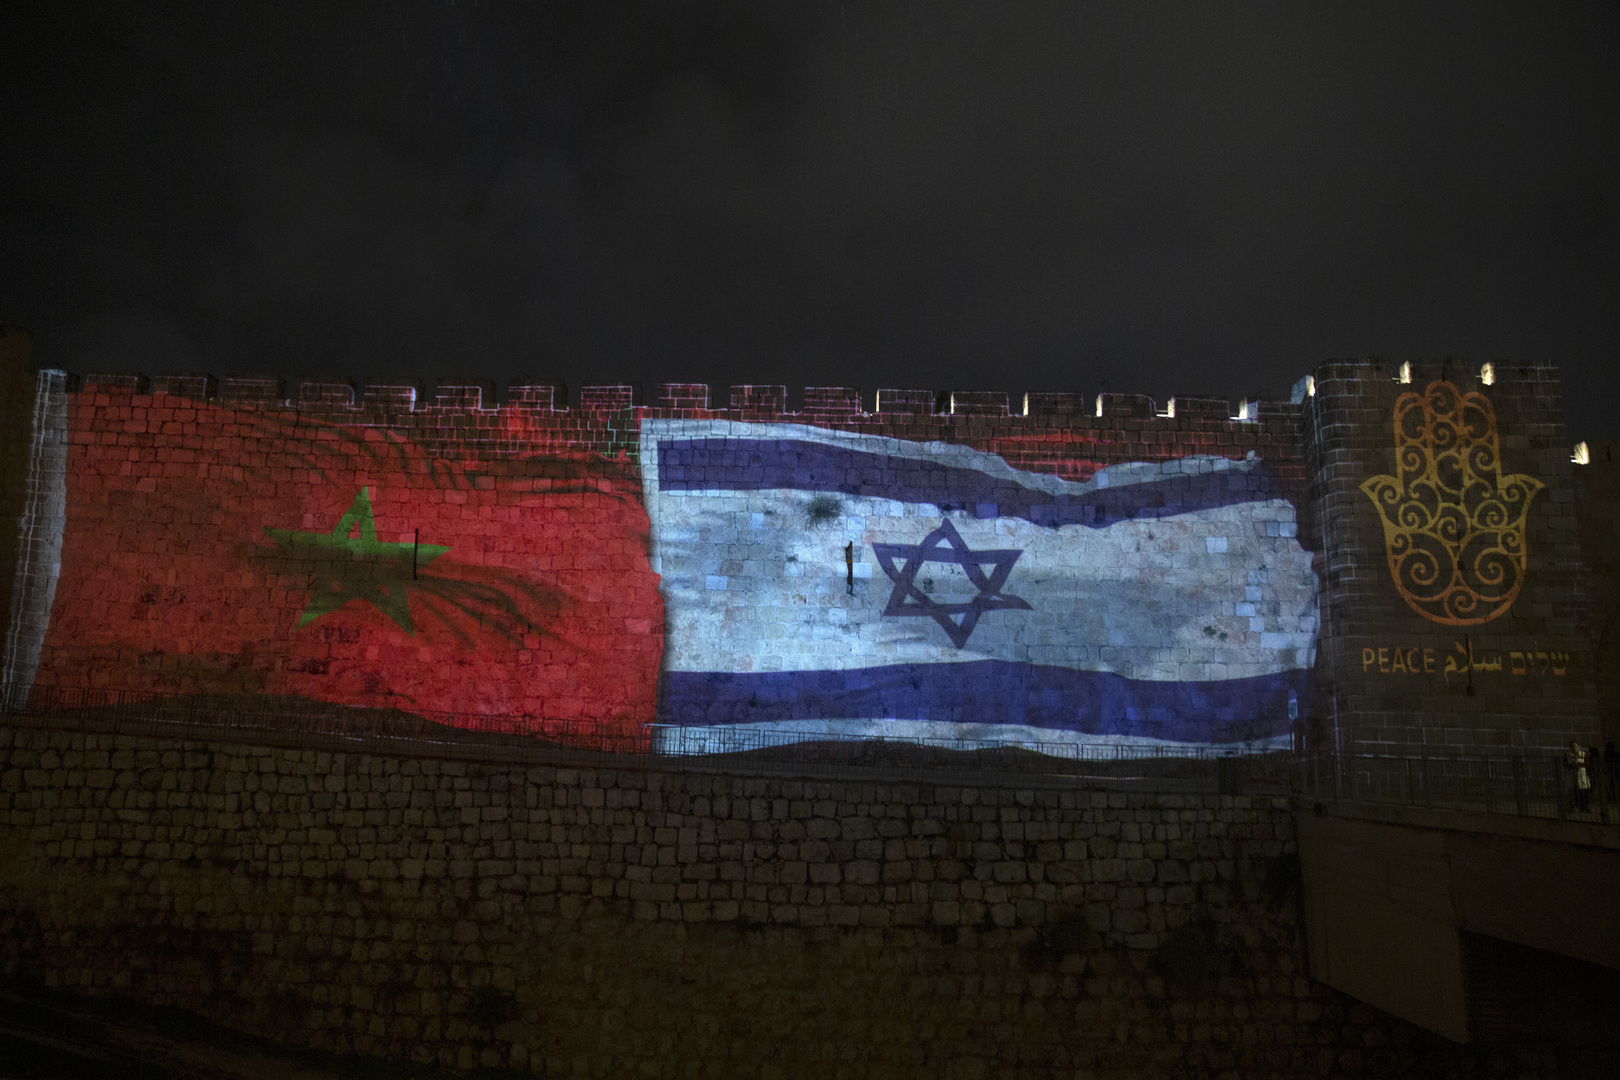 تقرير: المغرب يتفاوض مع إسرائيل على إنشاء شبكة لطائرات مسيرة انتحارية